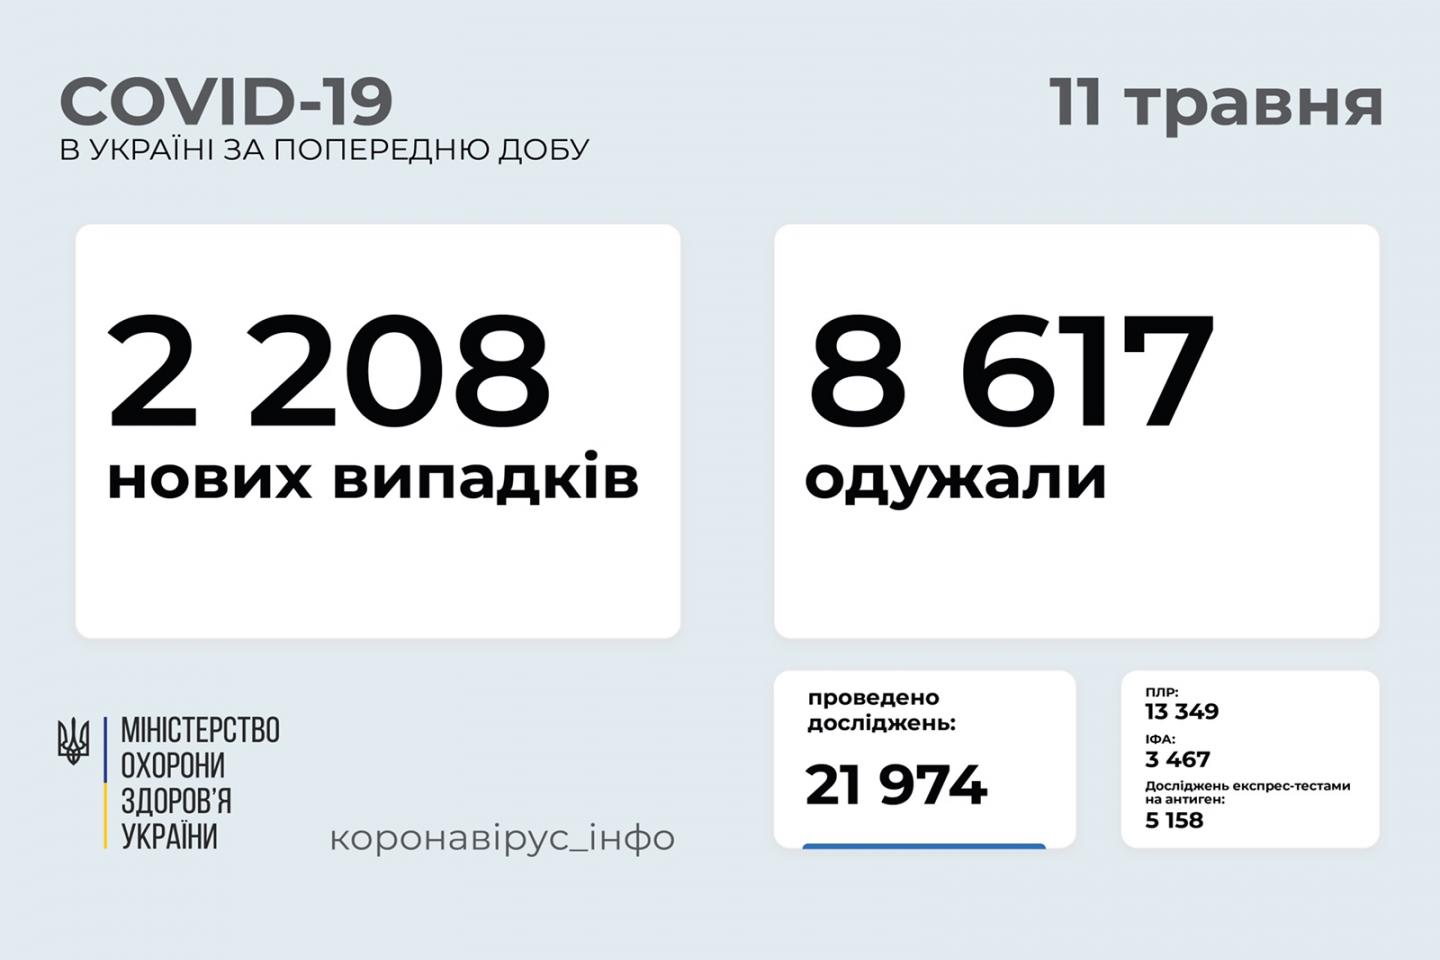 http://dunrada.gov.ua/uploadfile/archive_news/2021/05/11/2021-05-11_3889/images/images-36942.jpg